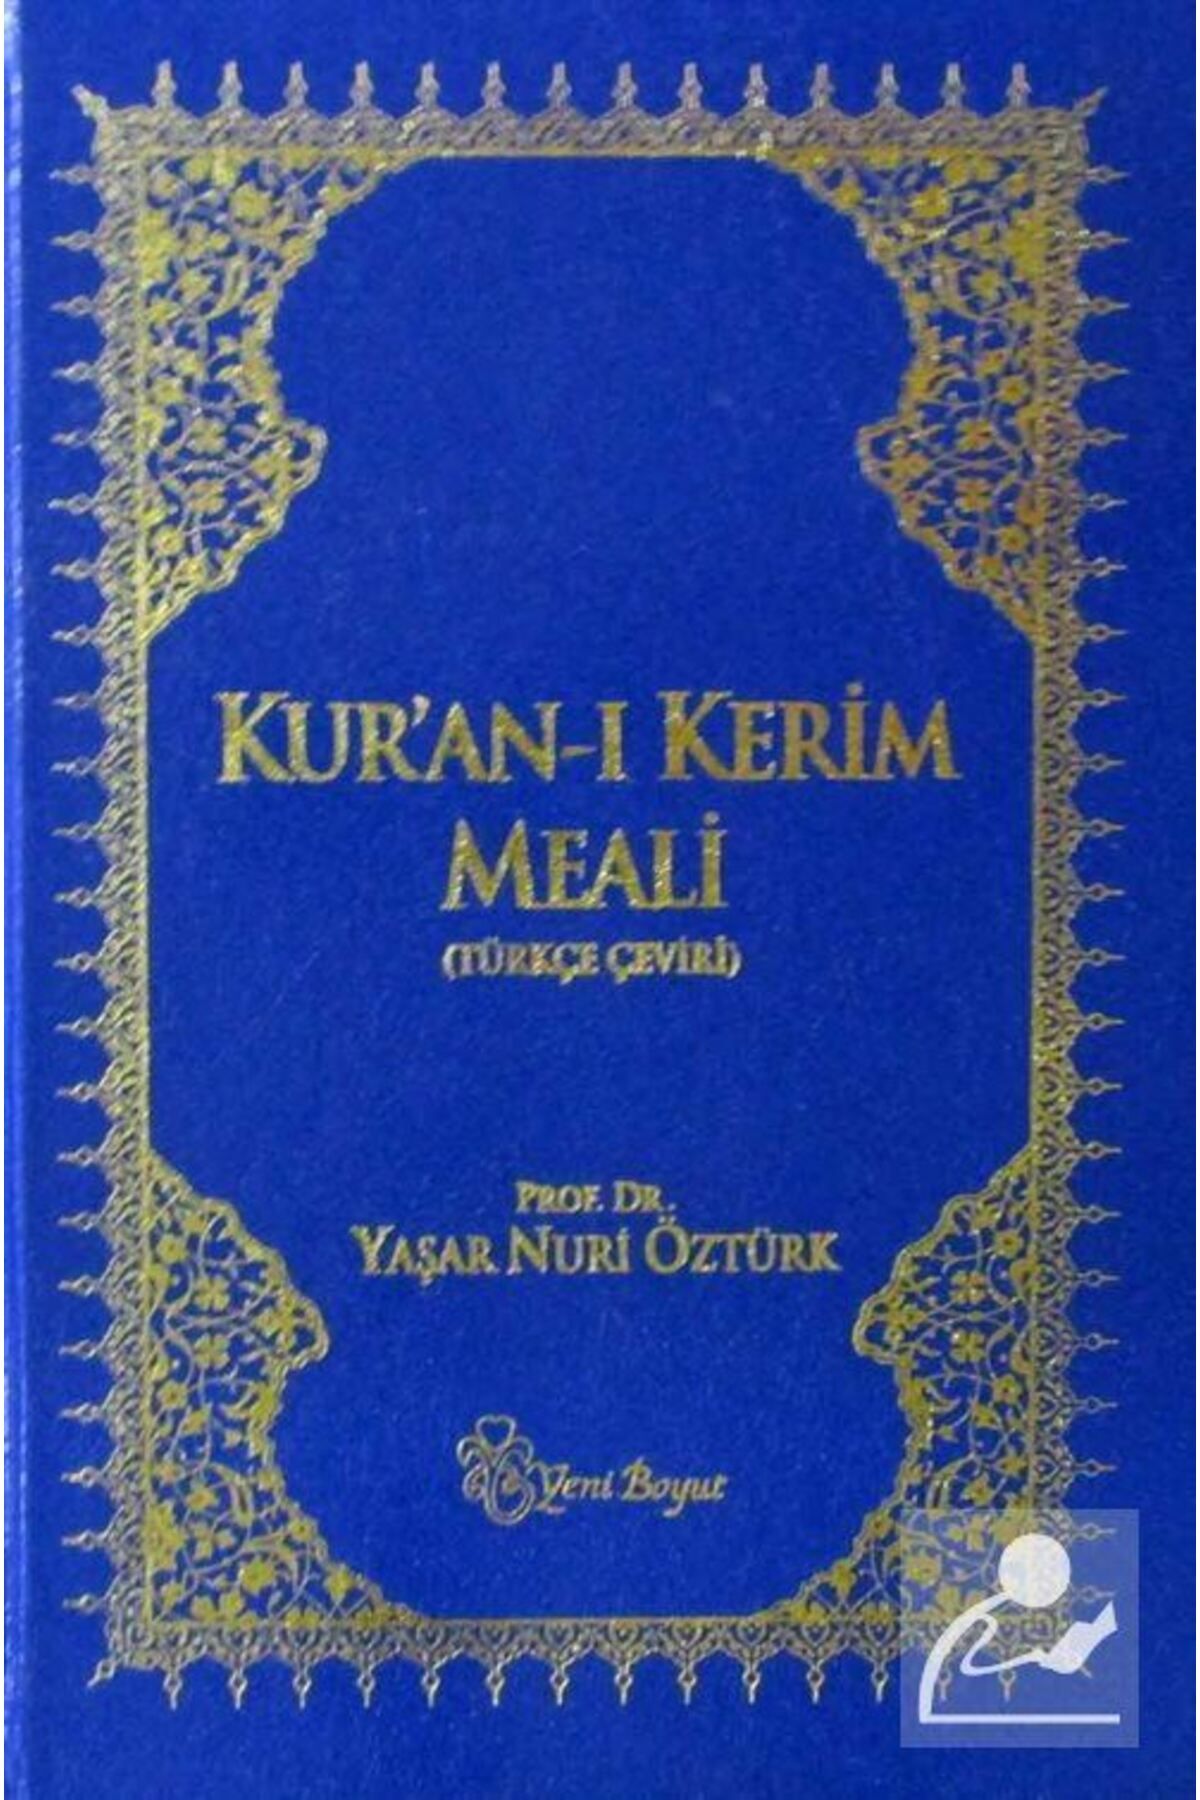 Yeni Boyut Yayınları Surelerin I?niş Sırasına Göre Kur'an-ı Kerim Meali (TÜRKÇE ÇEVİRİ)